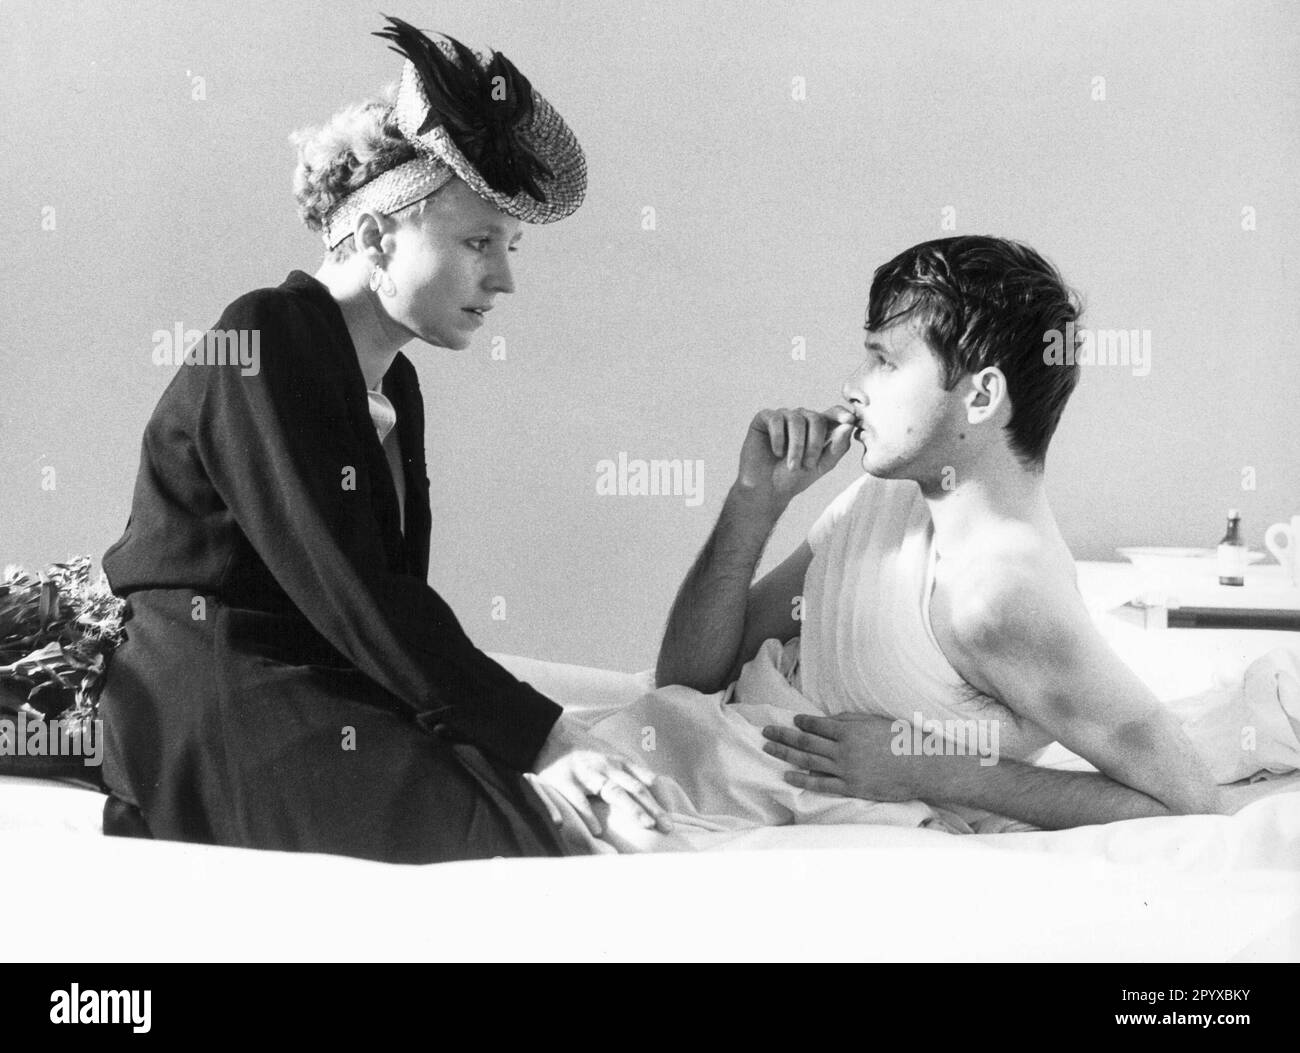 Hanna Schygulla als Pauline Kropp mit Piotr Lysak als Stani in "A Love in Germany", Regie Andrzej Wajda, Deutschland 1980. [Maschinelle Übersetzung] Stockfoto